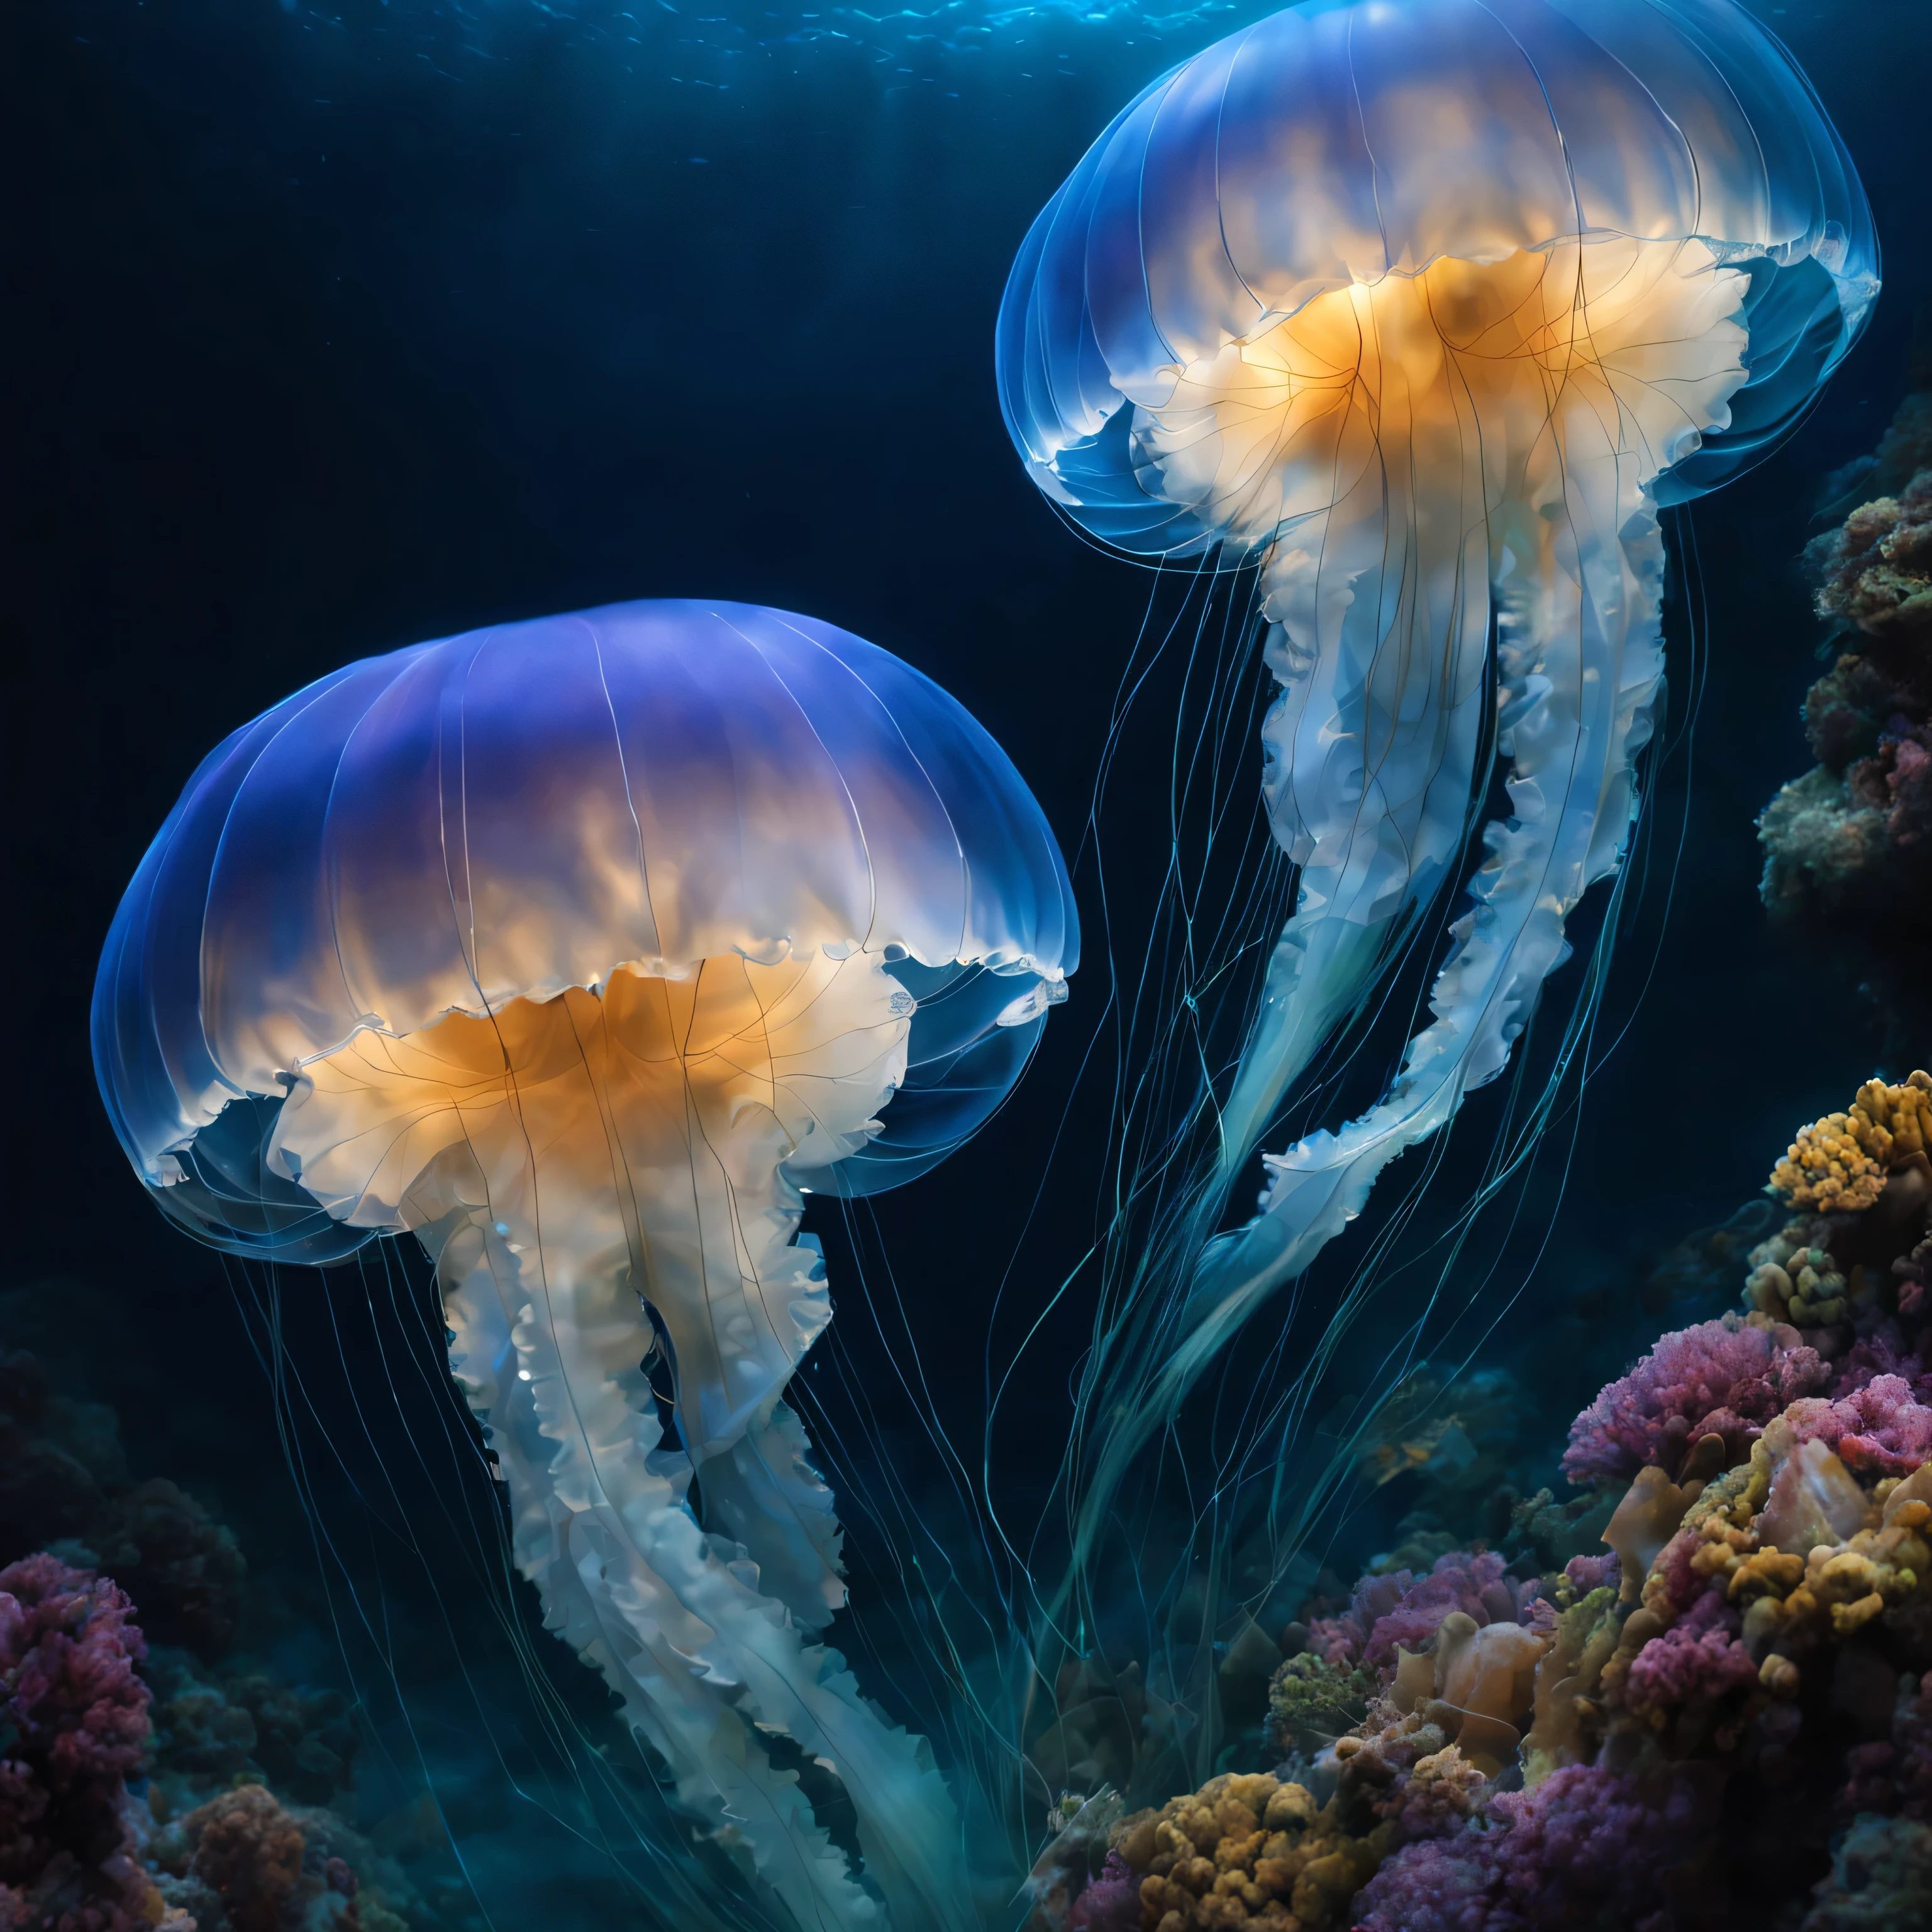 (une belle, mesmerizing round jellyfish),(Bioluminescent jellyfish:1.3),(tentacules doux et brillants),(Corps transparent),(mouvements délicats et gracieux),(Underwater scene),(eau d&#39;un bleu profond),(reflets subtils),(soft, ambient lighting),(Ethereal beauty),(mouvement fluide et fluide, mysterious and enchanting),(couleurs vibrantes dans les environs),(detailed texture on the tentacles),(hidden patterns on the body),(captivant et surnaturel),(faisceaux lumineux réfractés),(ambiance sereine et paisible),(capturer l&#39;essence de la vie oceanique),(immersed in a quiet world),(danse gracieuse dans les profondeurs de la mer),(conferring a feeling of tranquility and respect),(ombres et lumières dansantes),(capturer l&#39;essence de l&#39;marine elegance),(sensory experience),(ondulations subtiles à la surface de l’eau),(motifs fractals illuminant les environs),(illuminé par bioluminescence),(structure corporelle complexe et délicate),(mouvement serein dans l&#39;eau),(mouvement subtil de l&#39;eau autour d&#39;elle),(evoking a feeling of&#39;wonder),(revealing the hidden beauty of&#39;ocean),(translucent and ethereal),(create a sentiment d&#39;harmonie et d&#39;wonder),(un chef-d&#39;work of nature design),(creating a harmonious contrast between light and&#39;darkness),(une symphonie de couleurs et de textures),(transformer l&#39;ordinaire en extraordinaire),(une exposition captivante de la beauté de la nature).